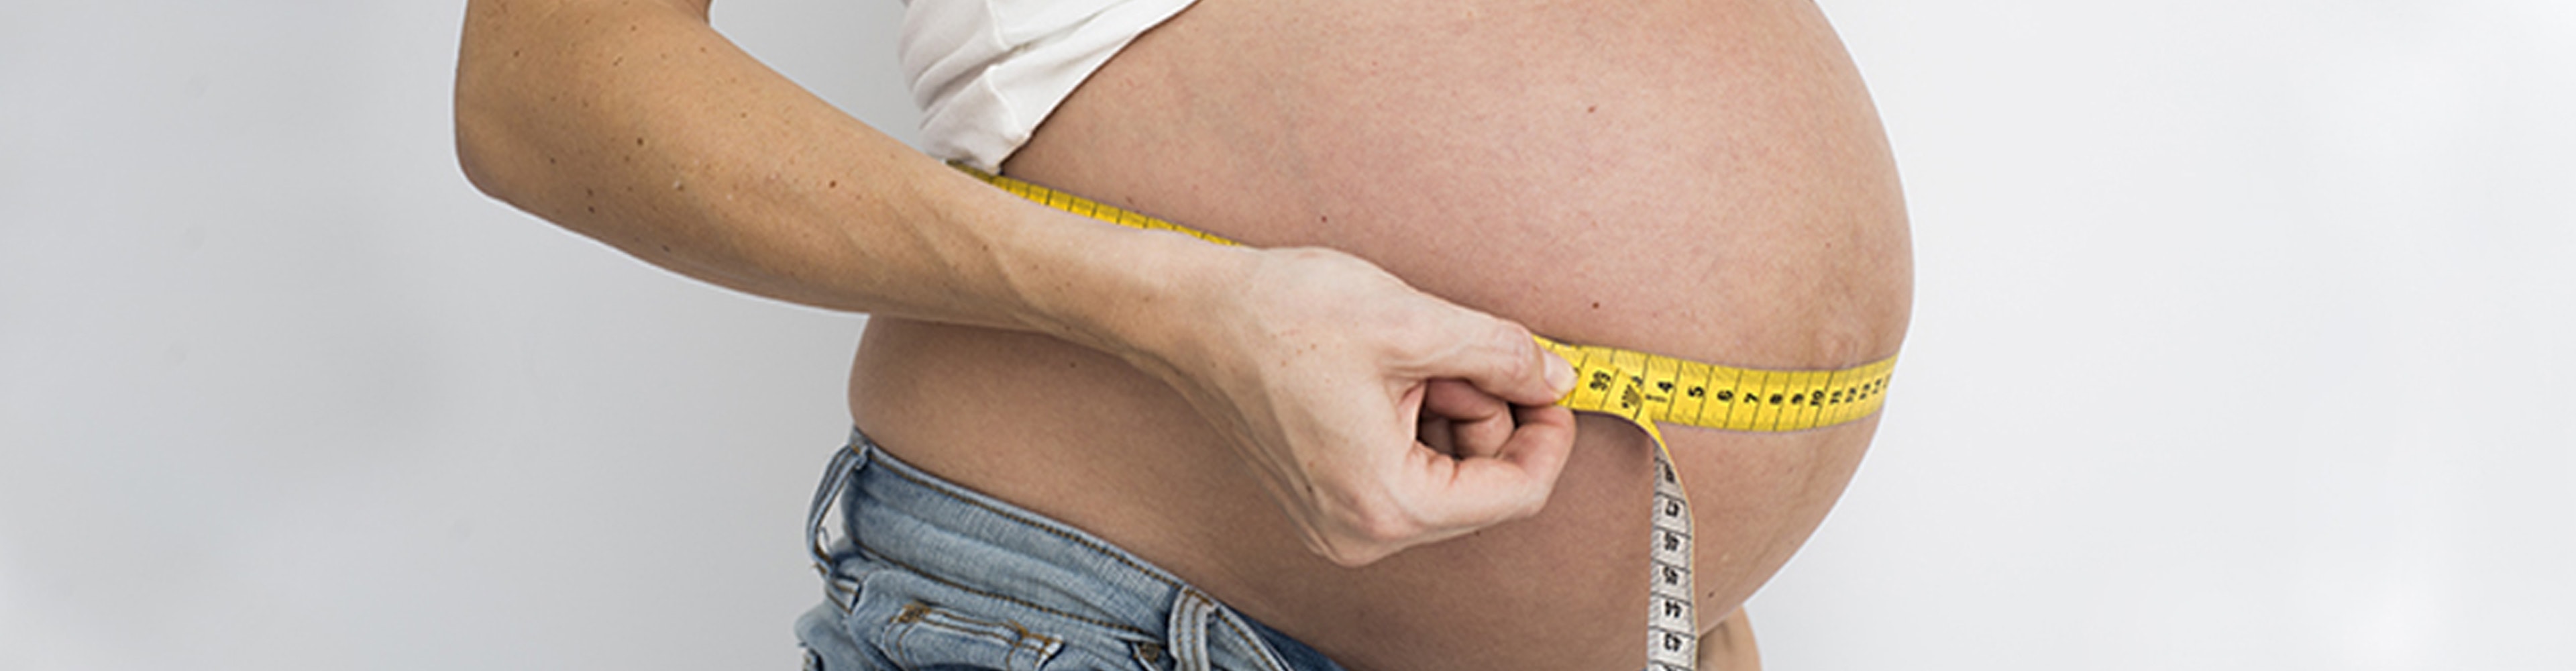 Gewicht in der Schwangerschaft – ein wichtiges Thema für die Frau